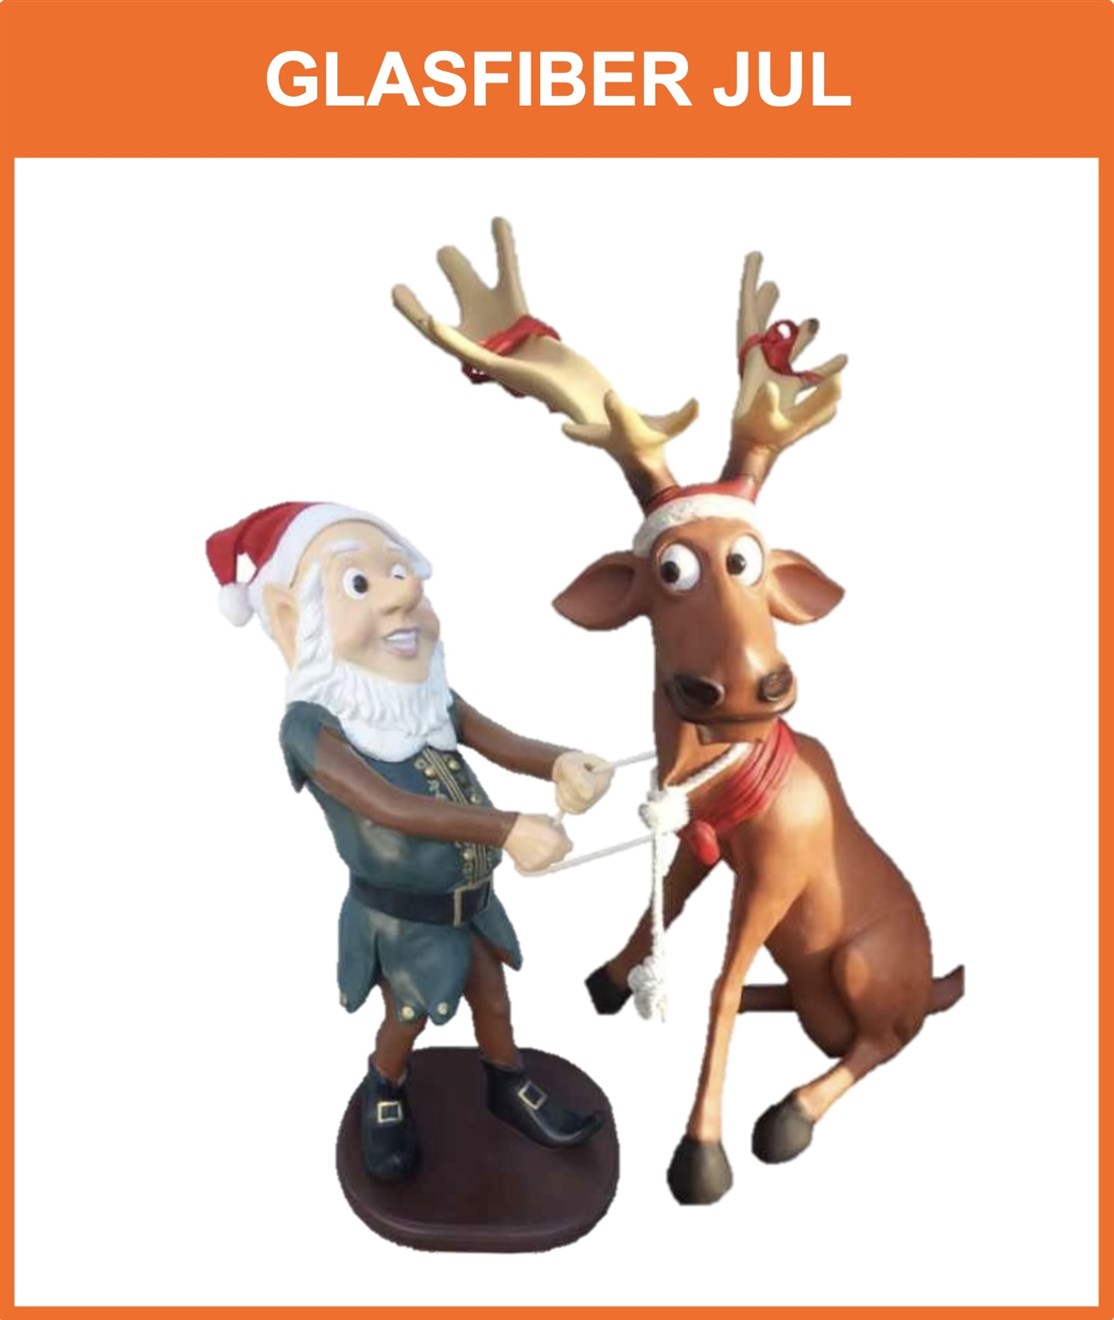 Stort udvalg af glasfiber dyr & figurer til jul
*